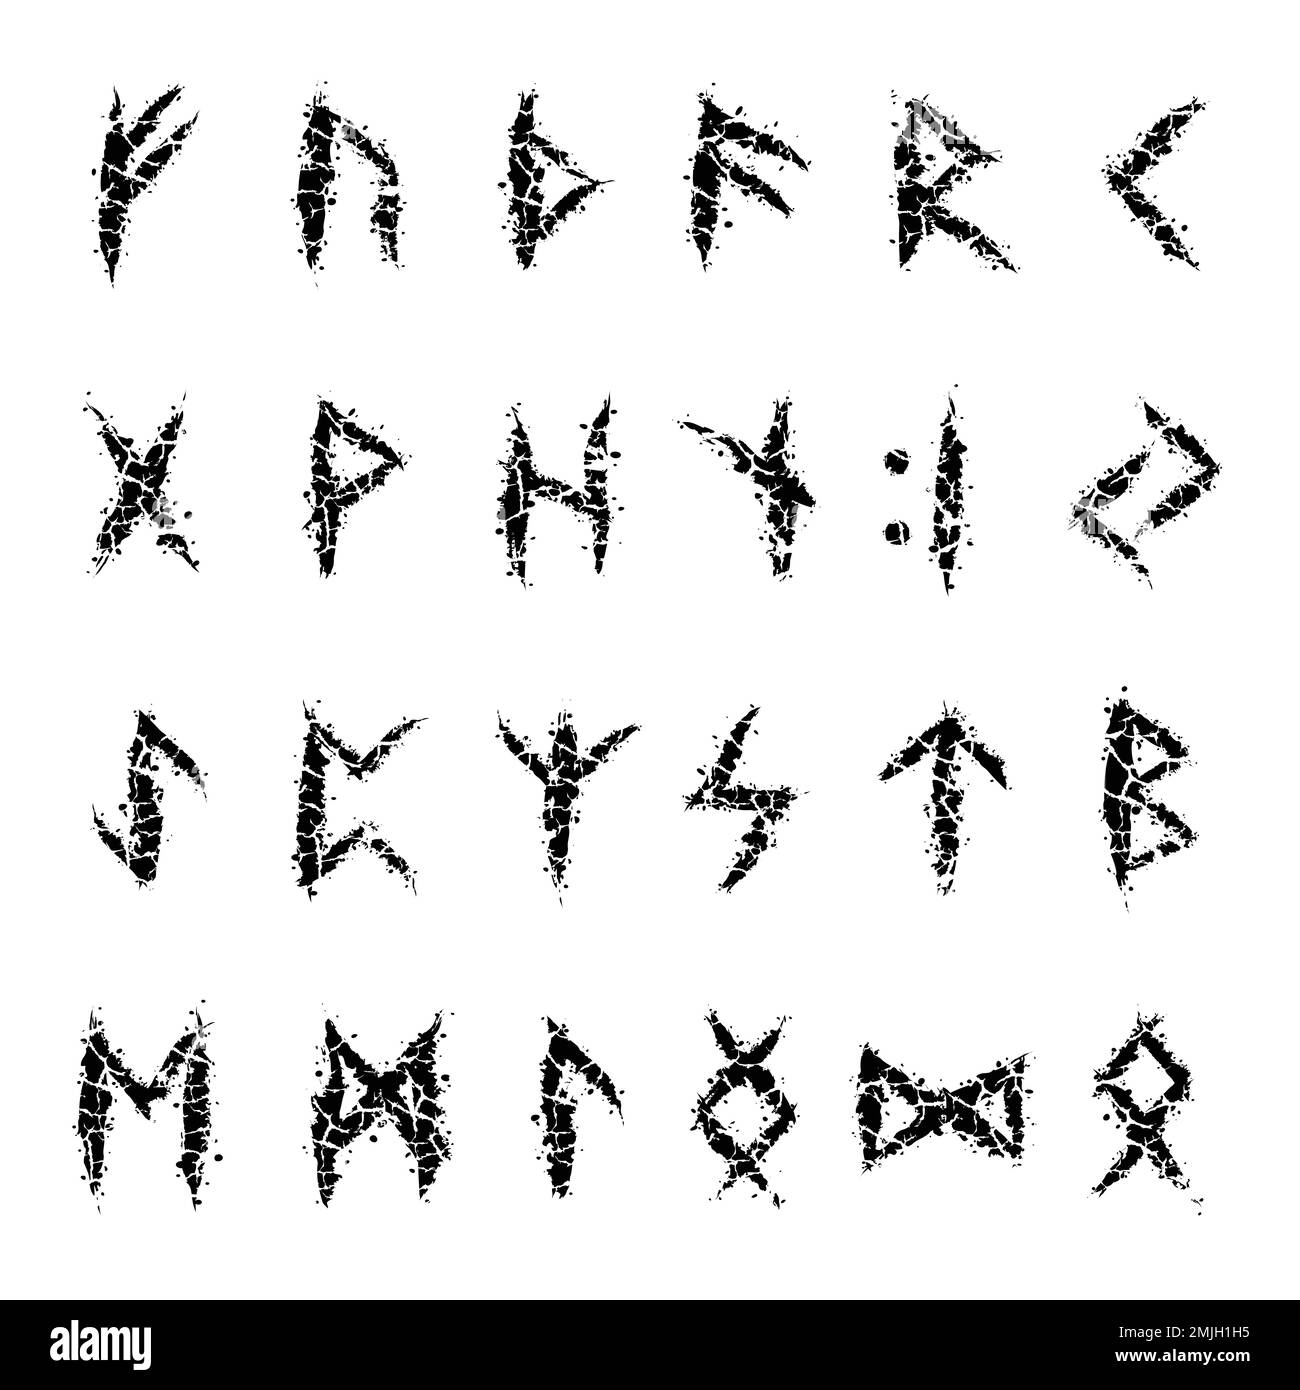 Lettere scandinave rune spaccate Illustrazione Vettoriale